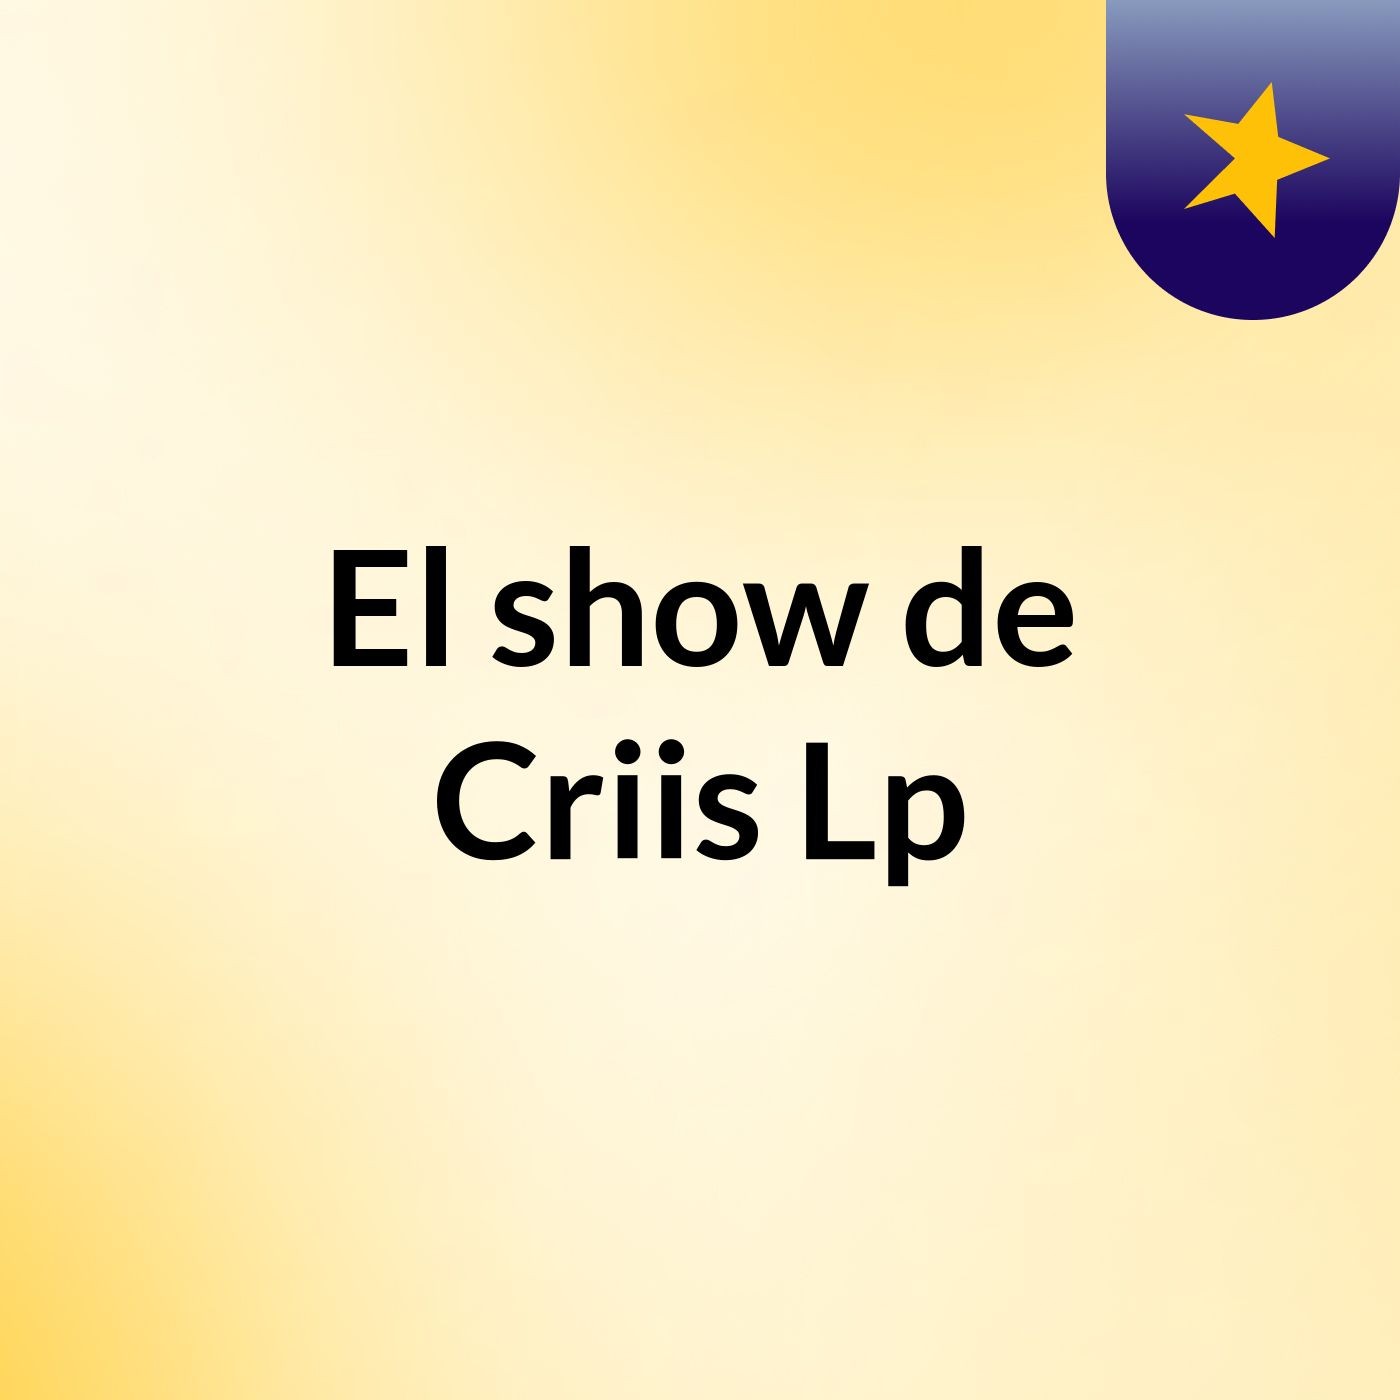 El show de Criis Lp